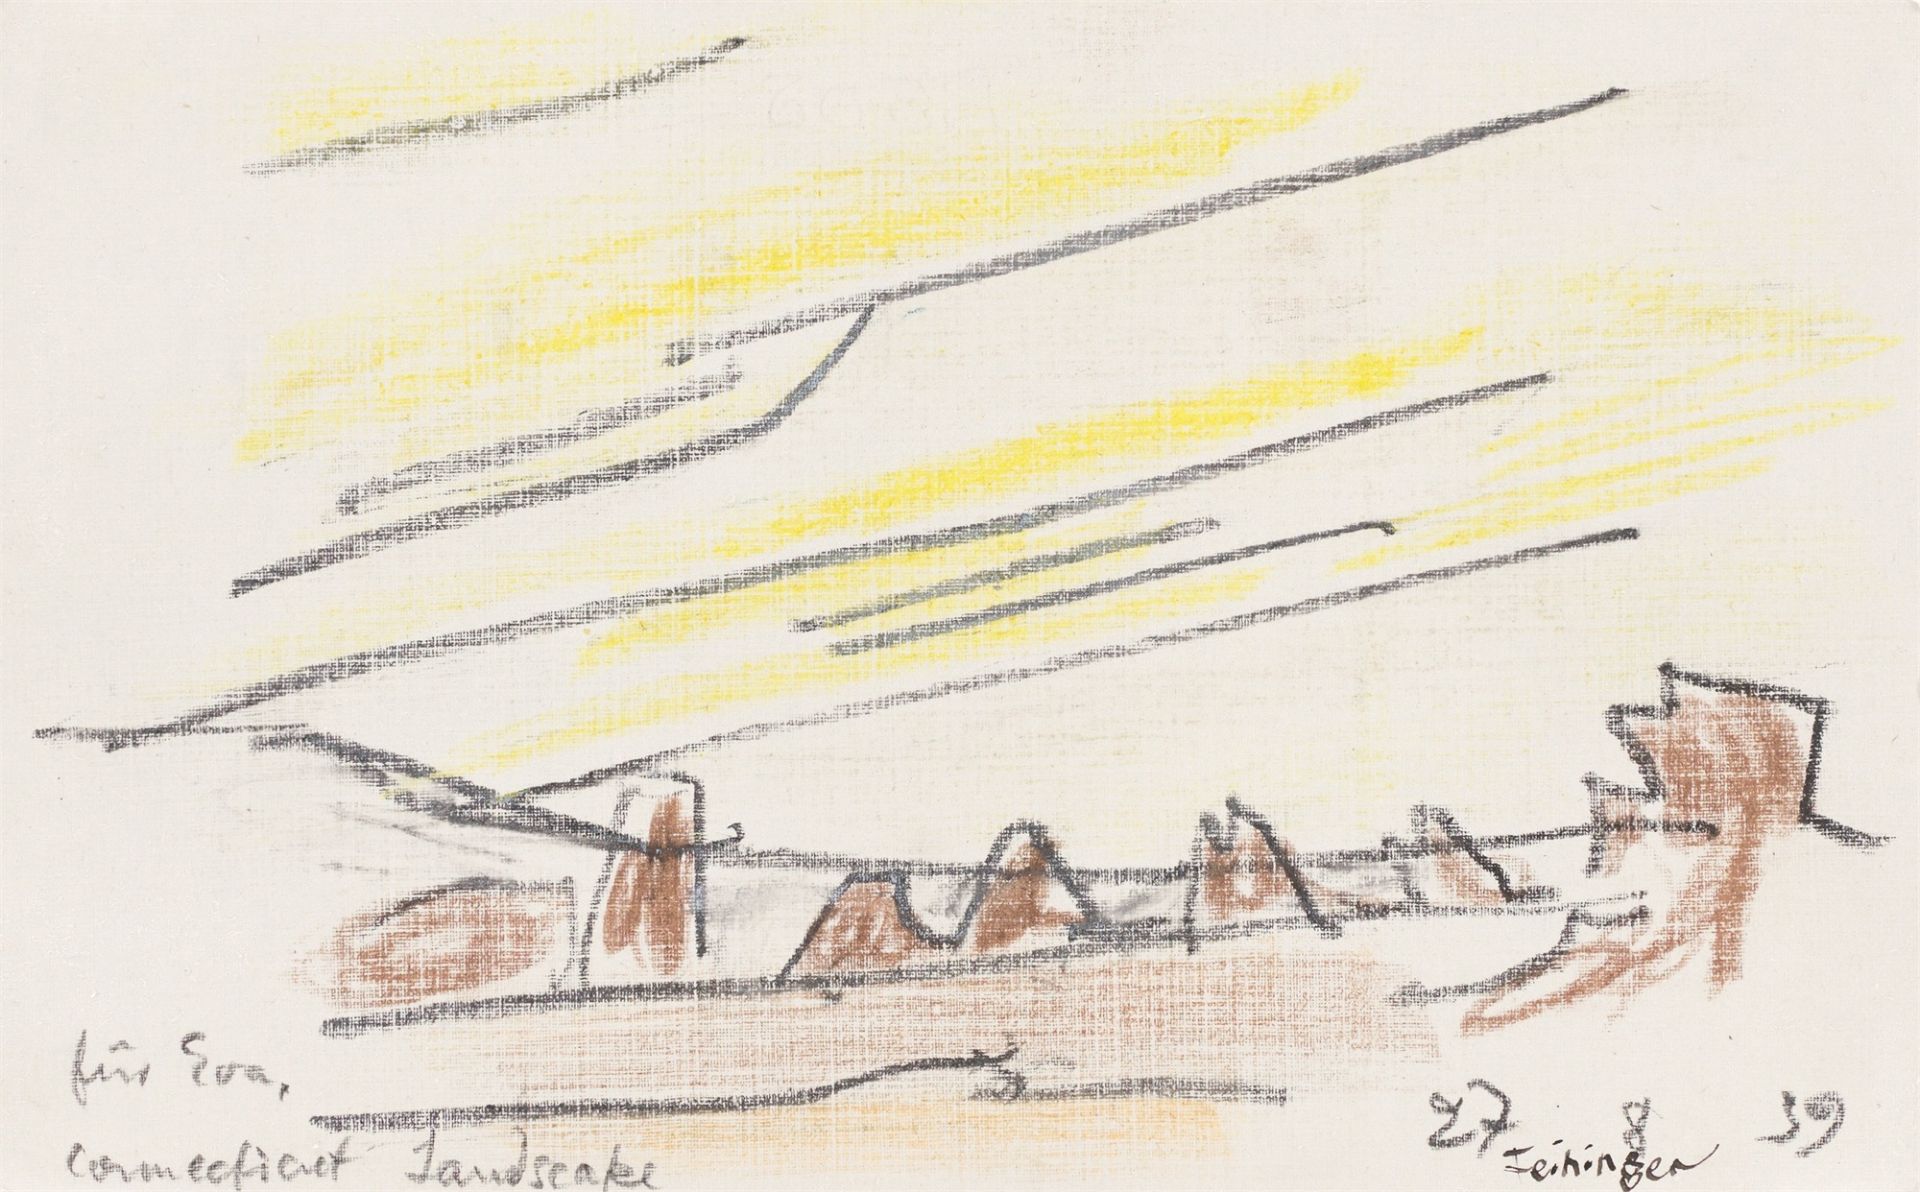 Lyonel Feininger. ”Connecticut Landscape”. 1939